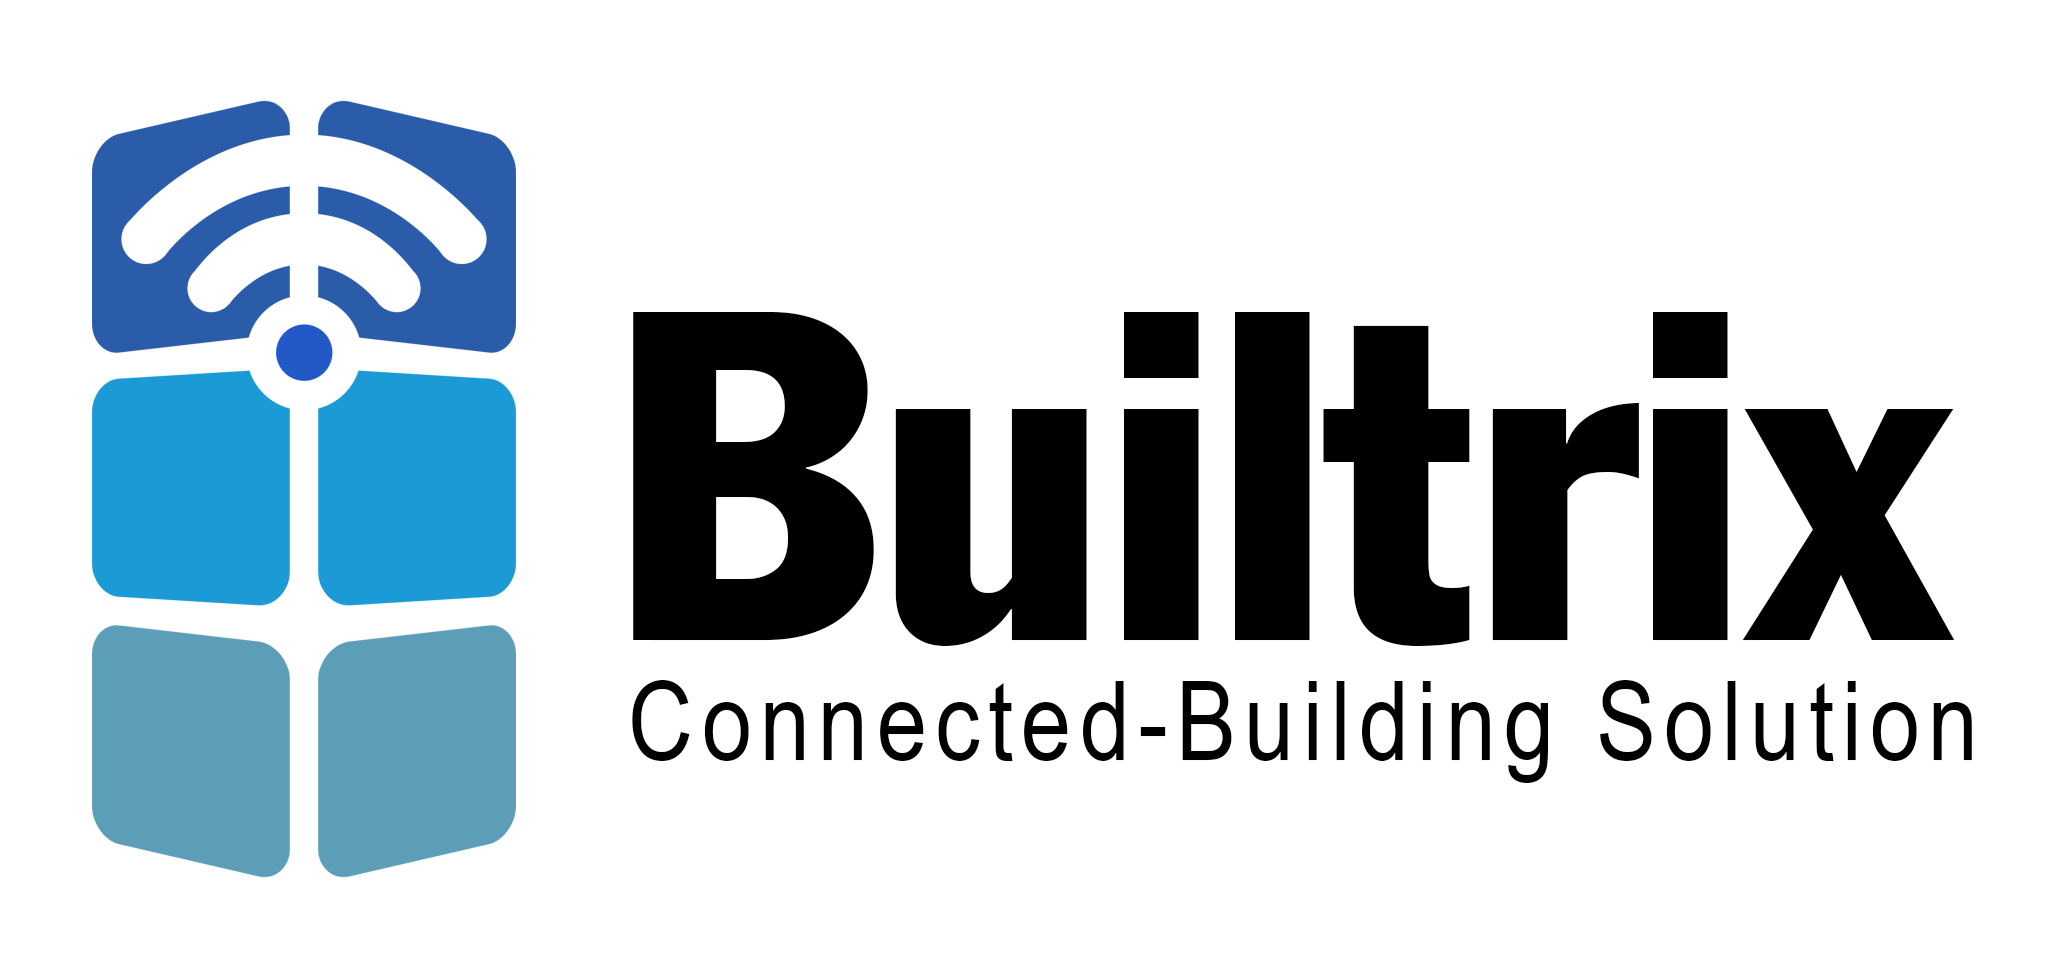 Builtrix